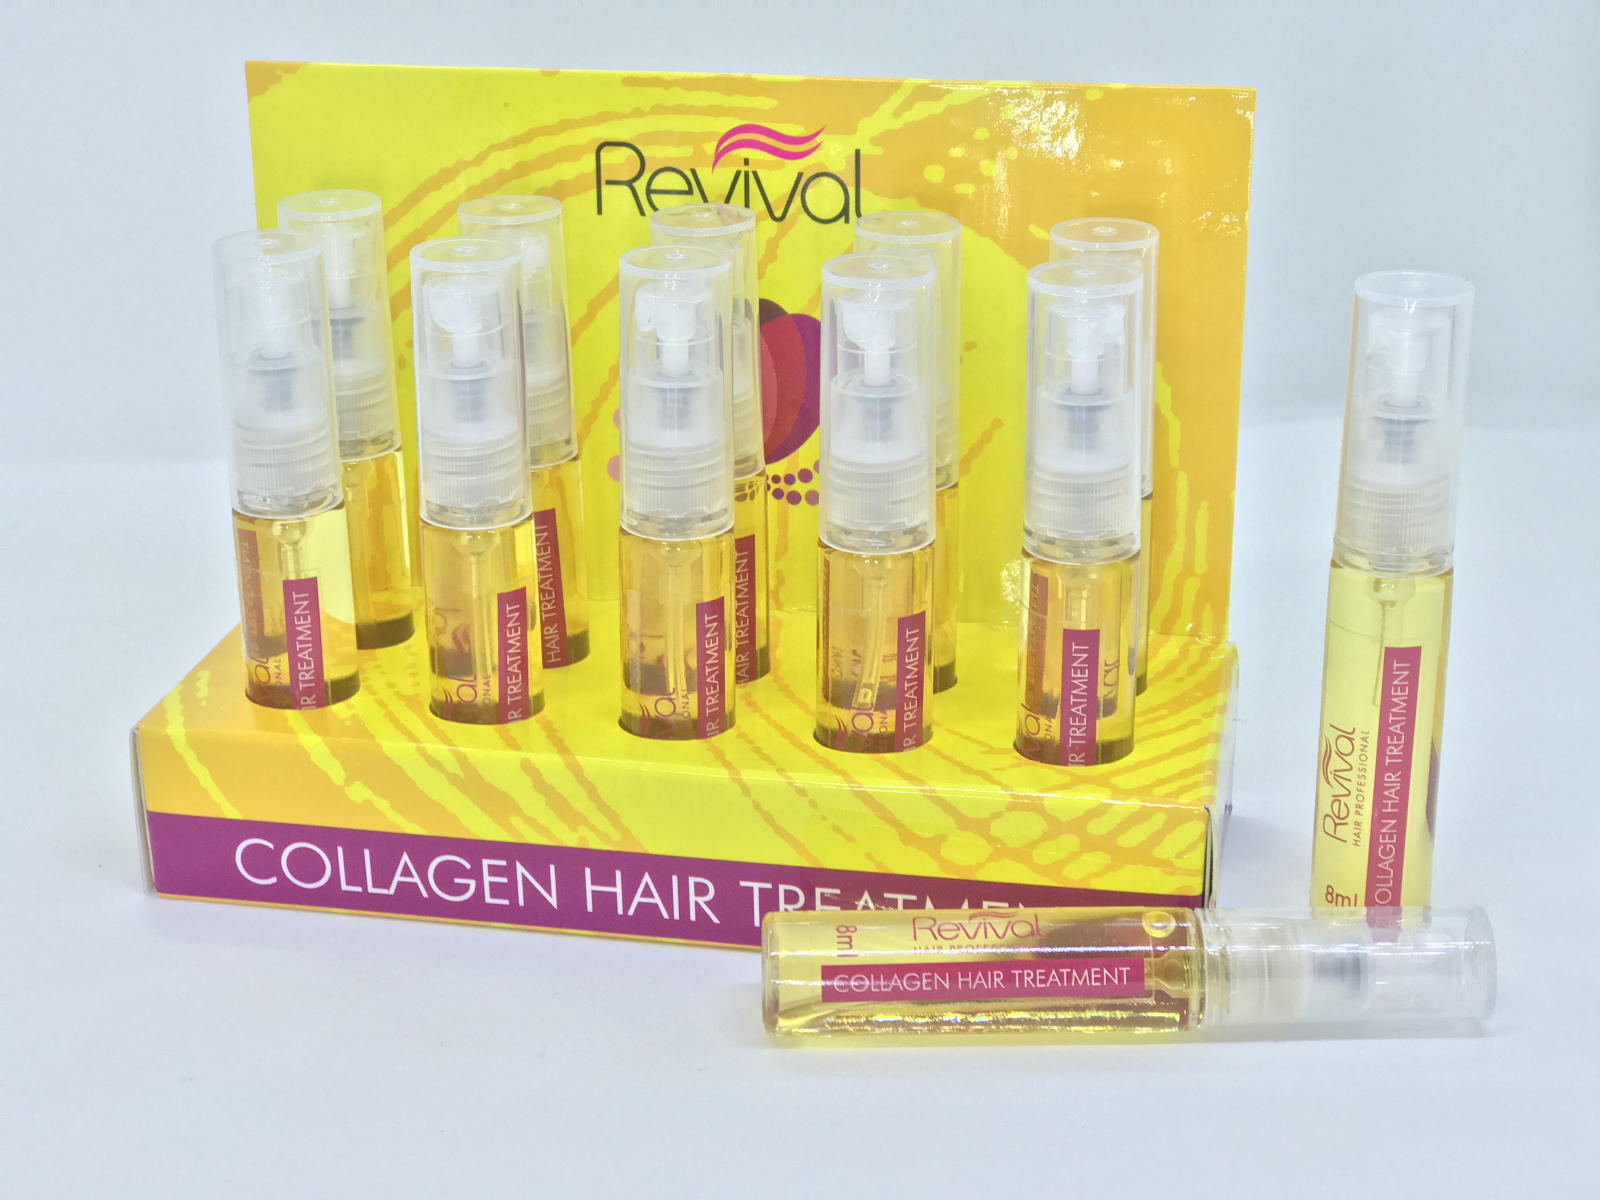 Revival Treatment Collagen